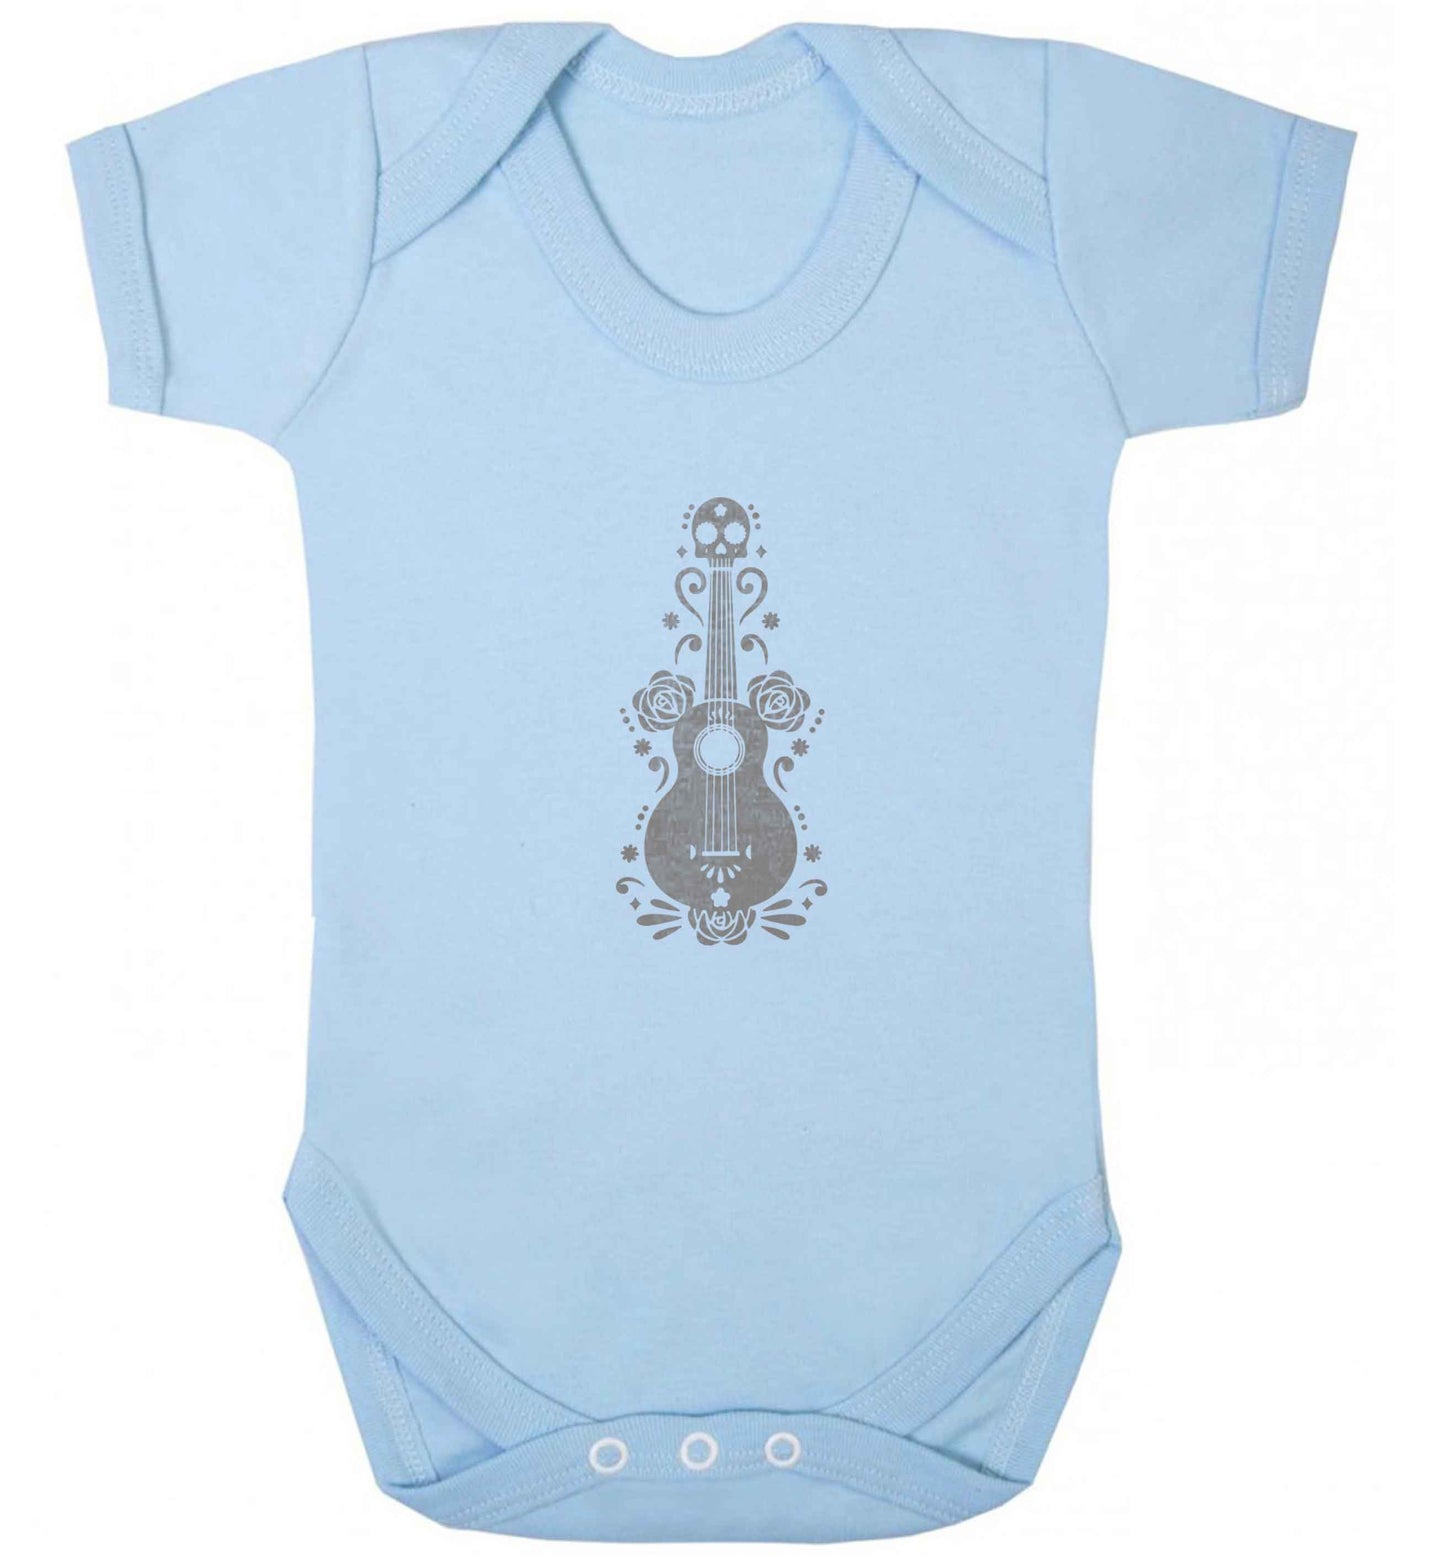 Guitar skull illustration baby vest pale blue 18-24 months